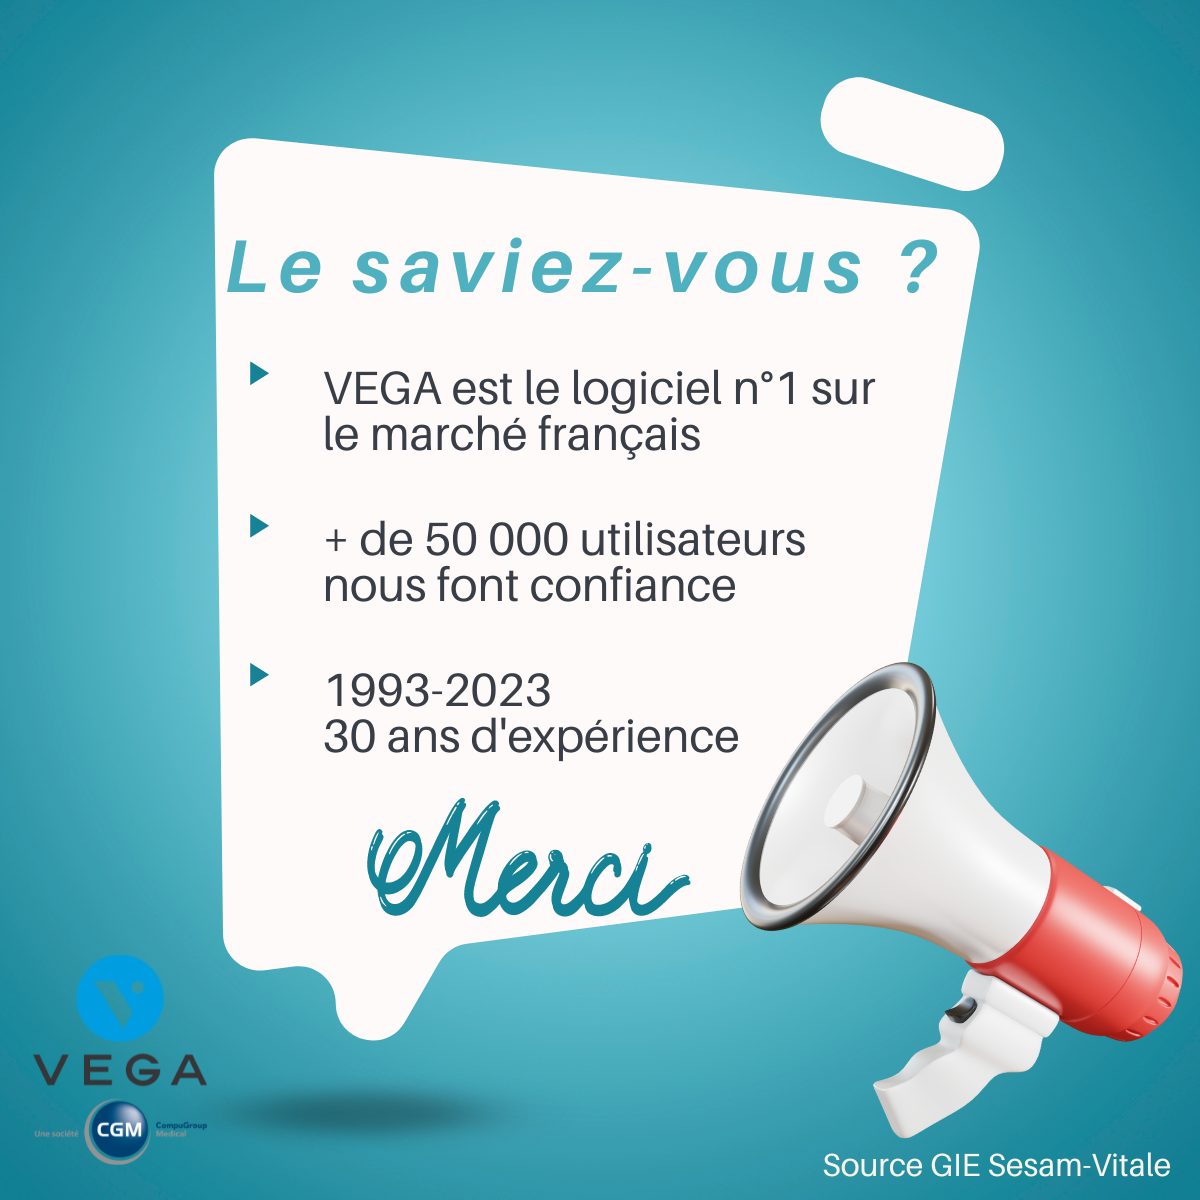 VEGA est le logiciel n°1 sur le marché français